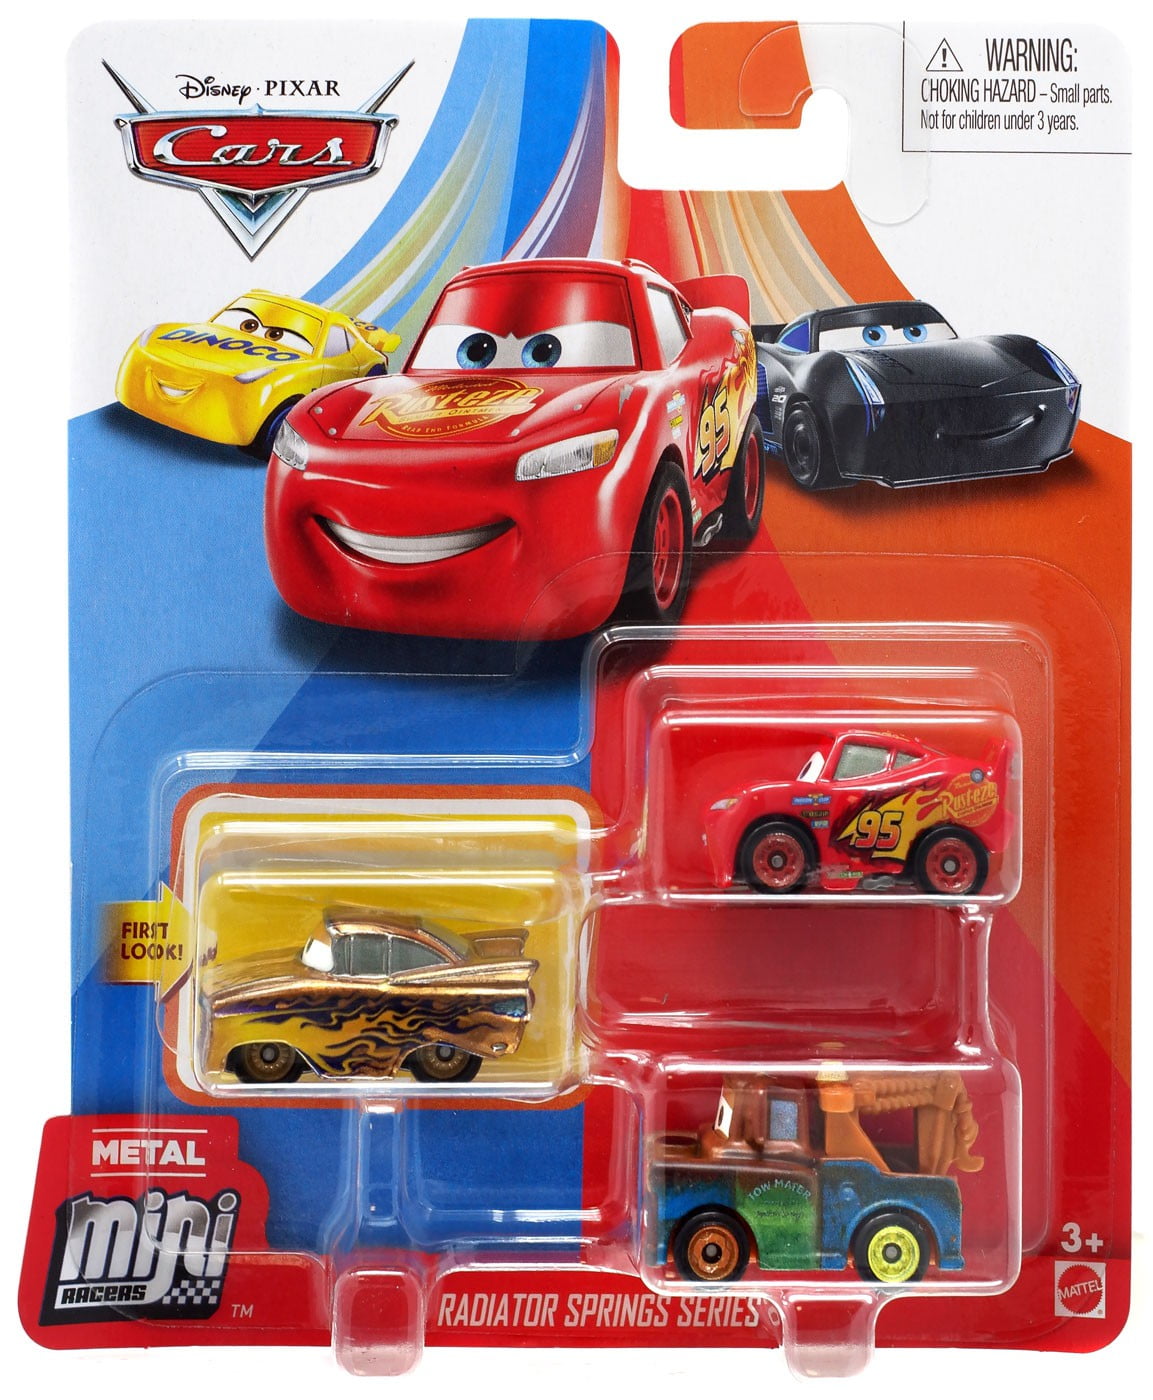 Cars Megasize 2017:Red Sélection Véhicules Megasize Mattel Disney Cars 3 Cast 1:55 Voiture 